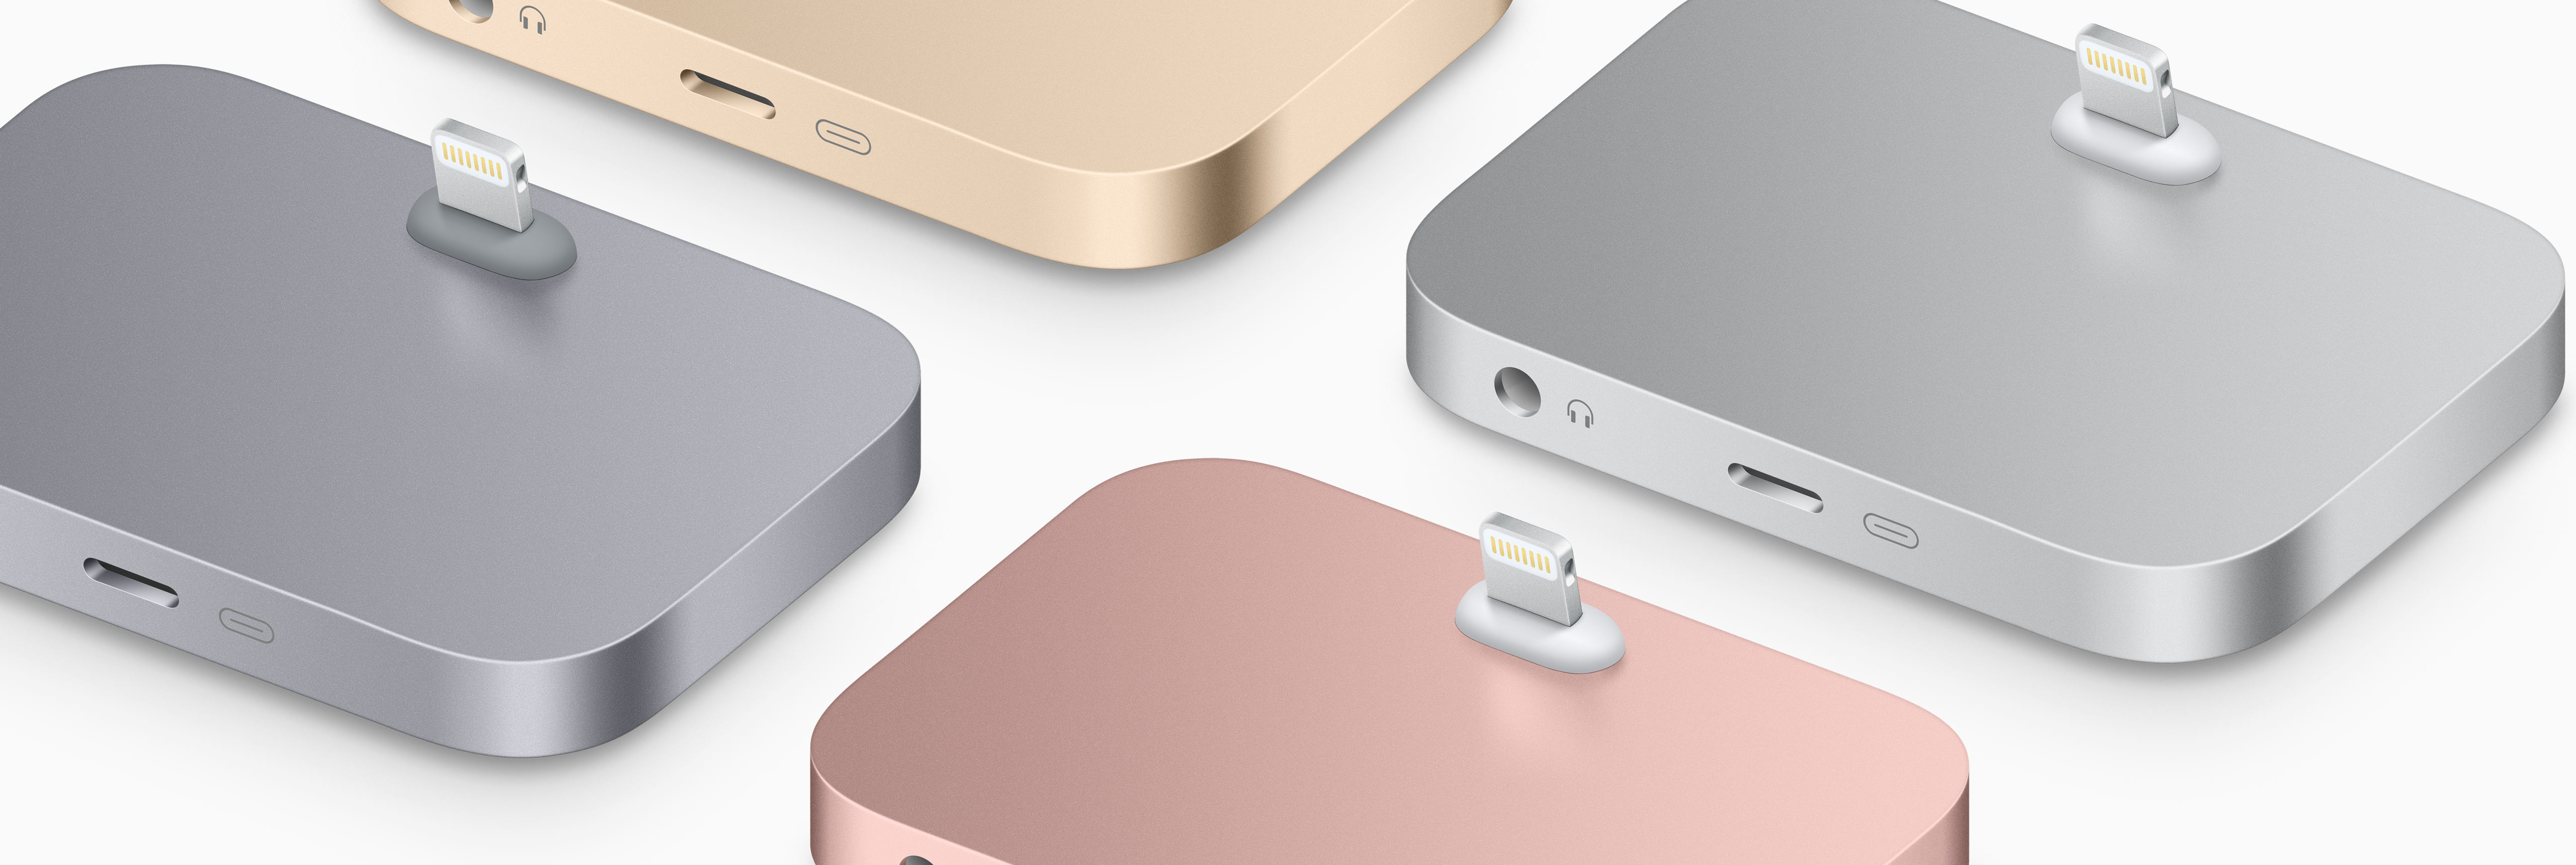 Summon exposure Desperate A (nem tão) brilhante solução da Apple para quem quer usar fones com fio e  carregar o iPhone 7 ao mesmo tempo: o Dock Lightning - MacMagazine